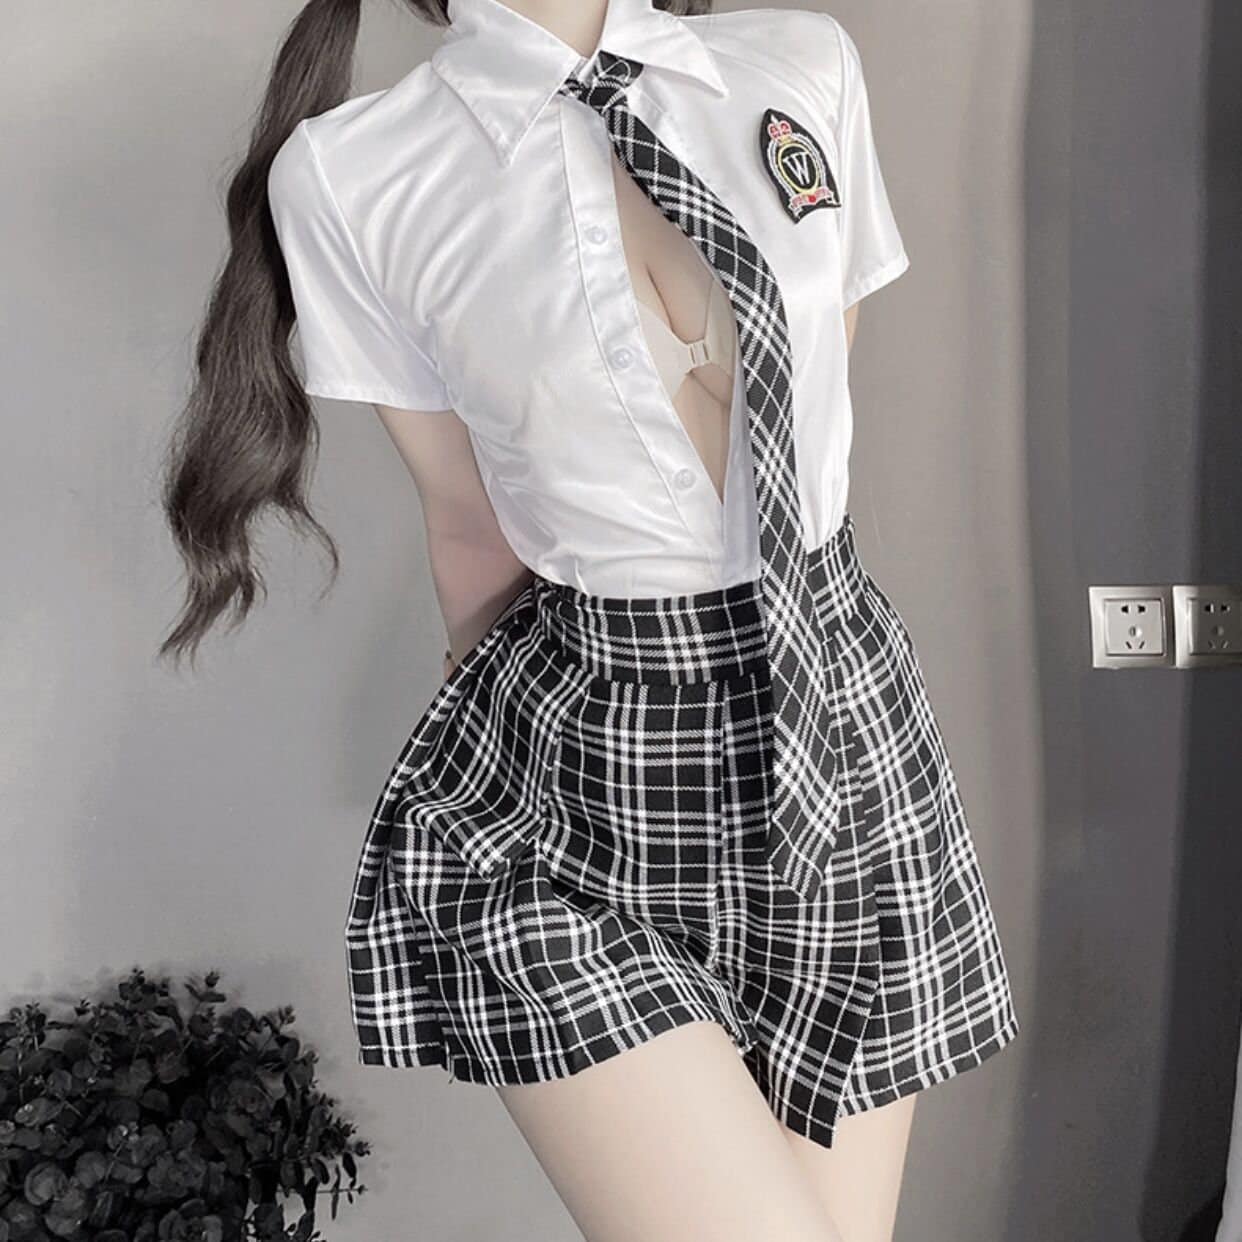 Cute Schoolgirl Uniform Porn - Schoolgirl Costume - Etsy